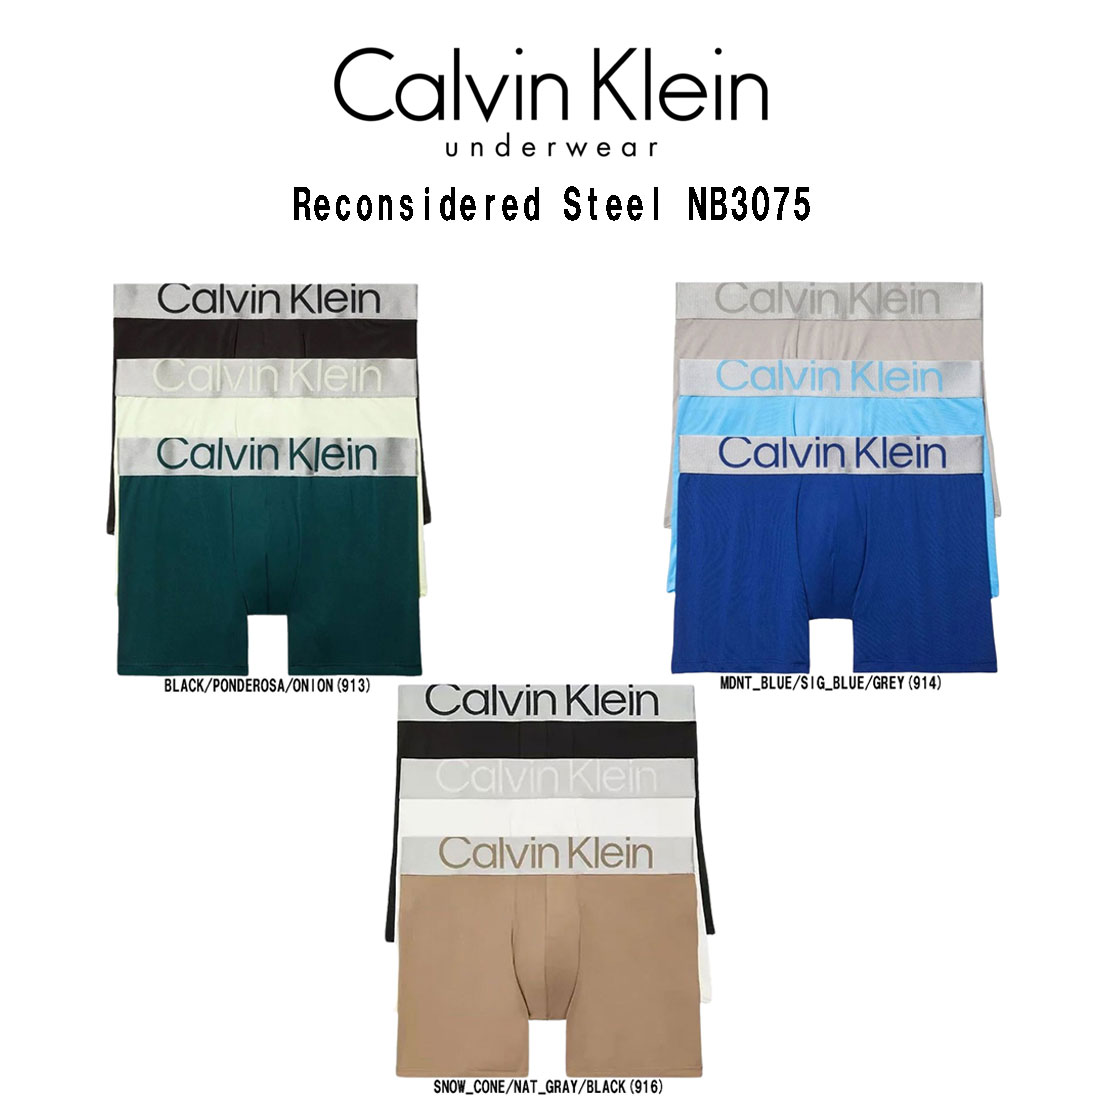 カルバン・クライン Calvin Klein(カルバンクライン)ボクサーパンツ 前閉じ 3枚セット アソート お買い得 パック メンズ 男性用 下着 CK Reconsidered Steel NB3075